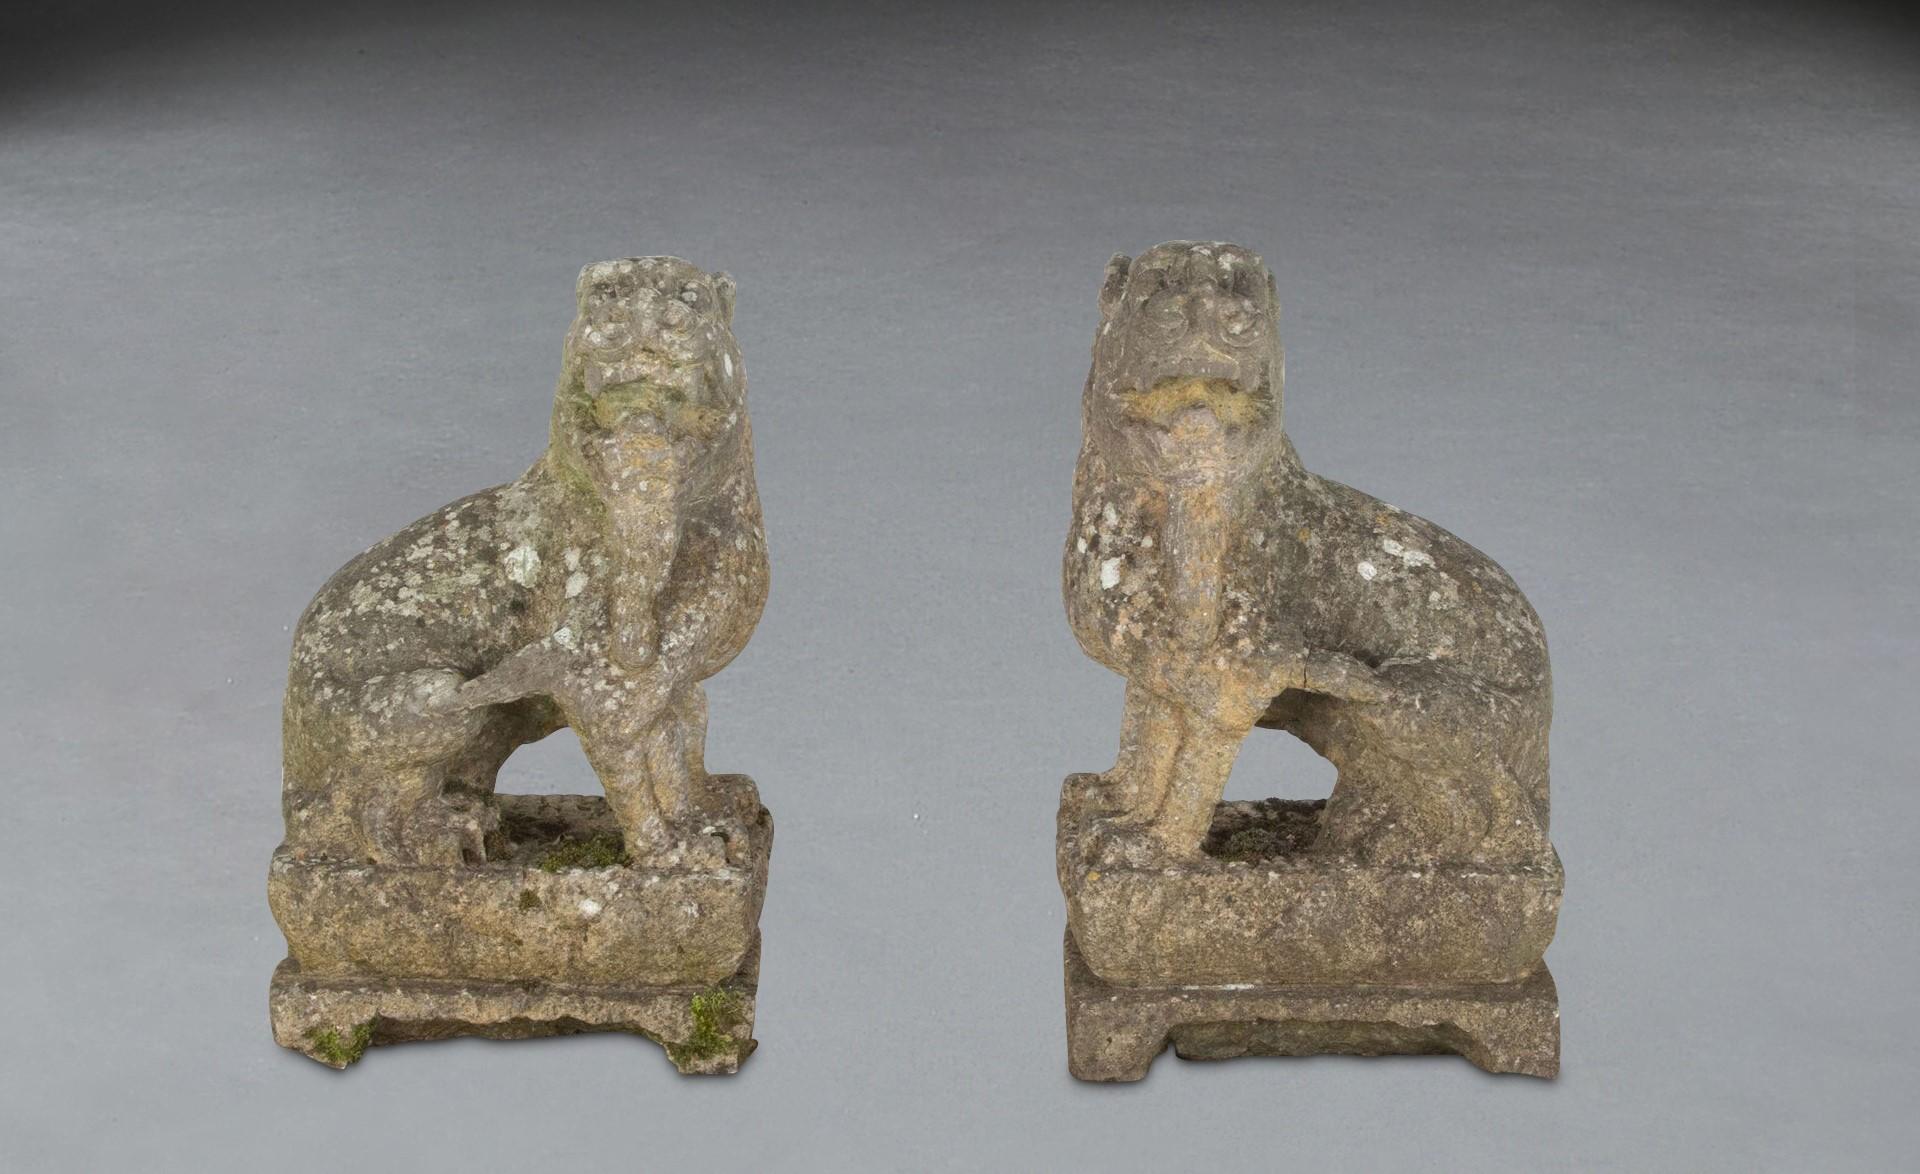 Ein ungewöhnliches Paar chinesischer geschnitzter Steinmodelle von Löwen, die jeweils mit gegensätzlichen Köpfen dargestellt sind und auf Lotussockeln sitzen. In gutem Zustand und mit schön verwitterter Oberfläche. Um 1880.

H: 49 cm (19 5/16